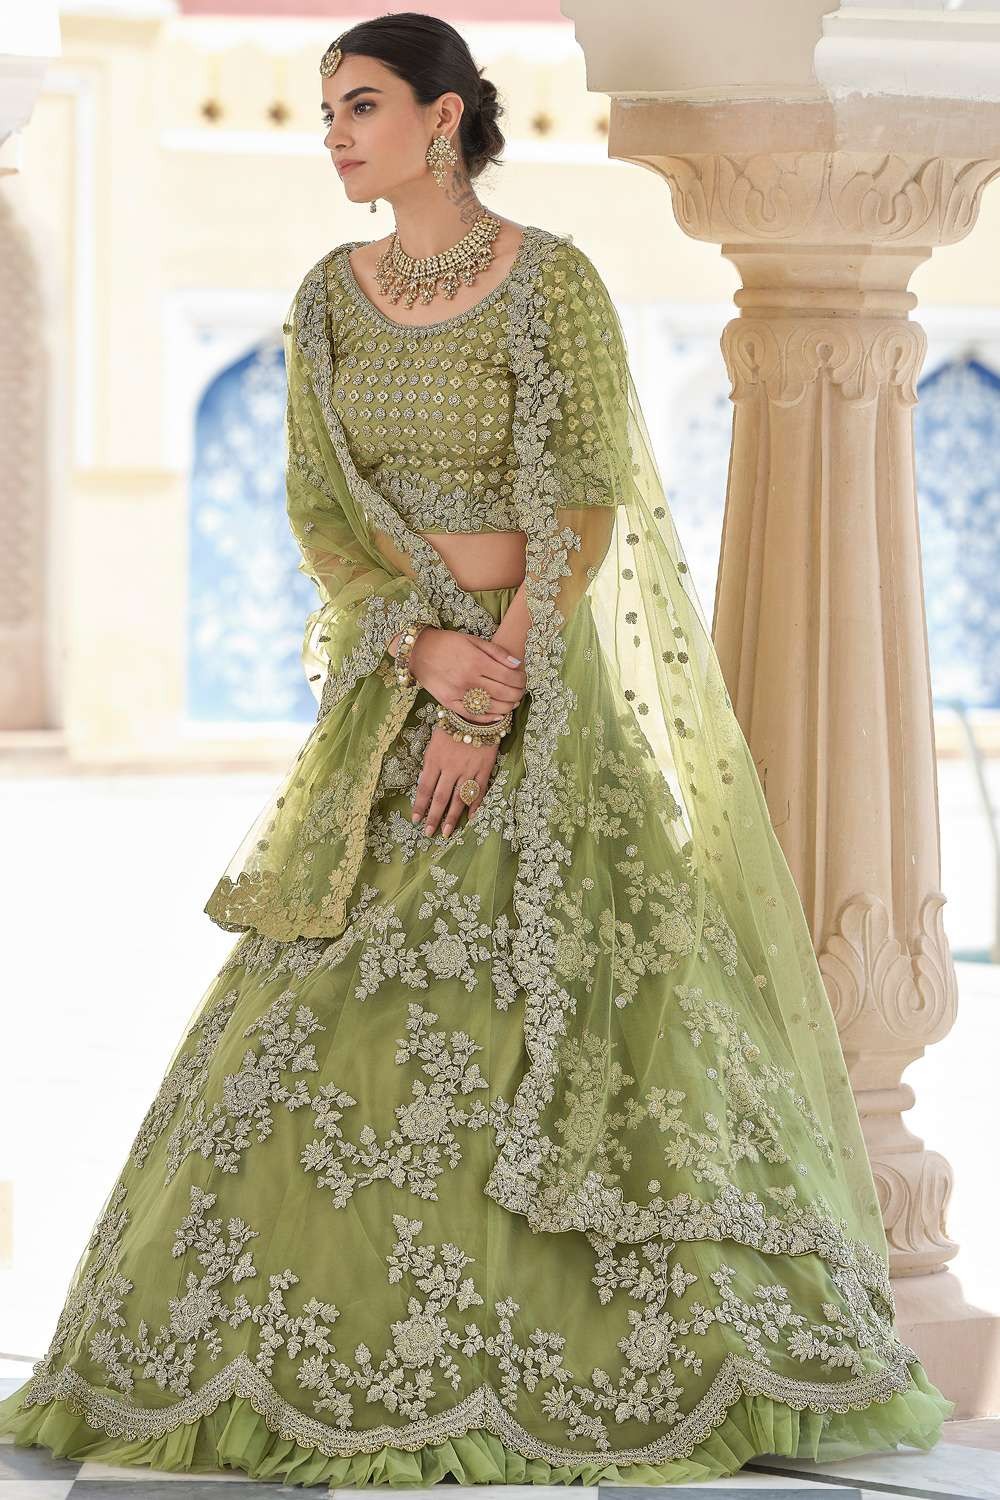 PARTY WEAR LEHENGA CHOLI PAKISTANI BOLLYWOOD DESIGNER INDIAN WEDDING  READYMADE | eBay